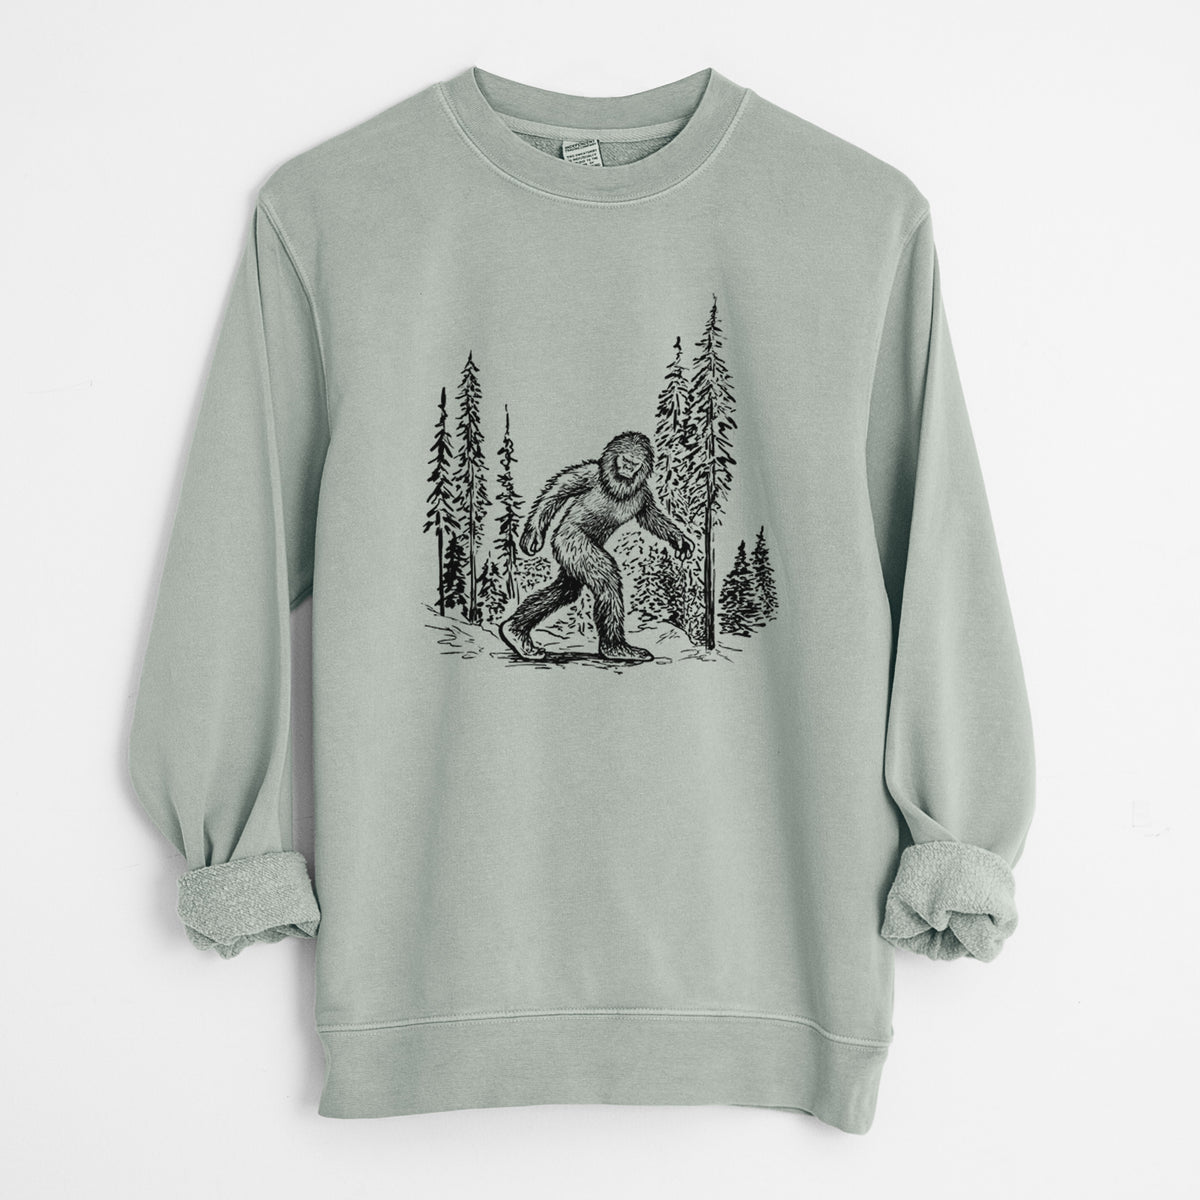 Bigfoot in the Woods - Unisex Pigment Dyed Crew Sweatshirt